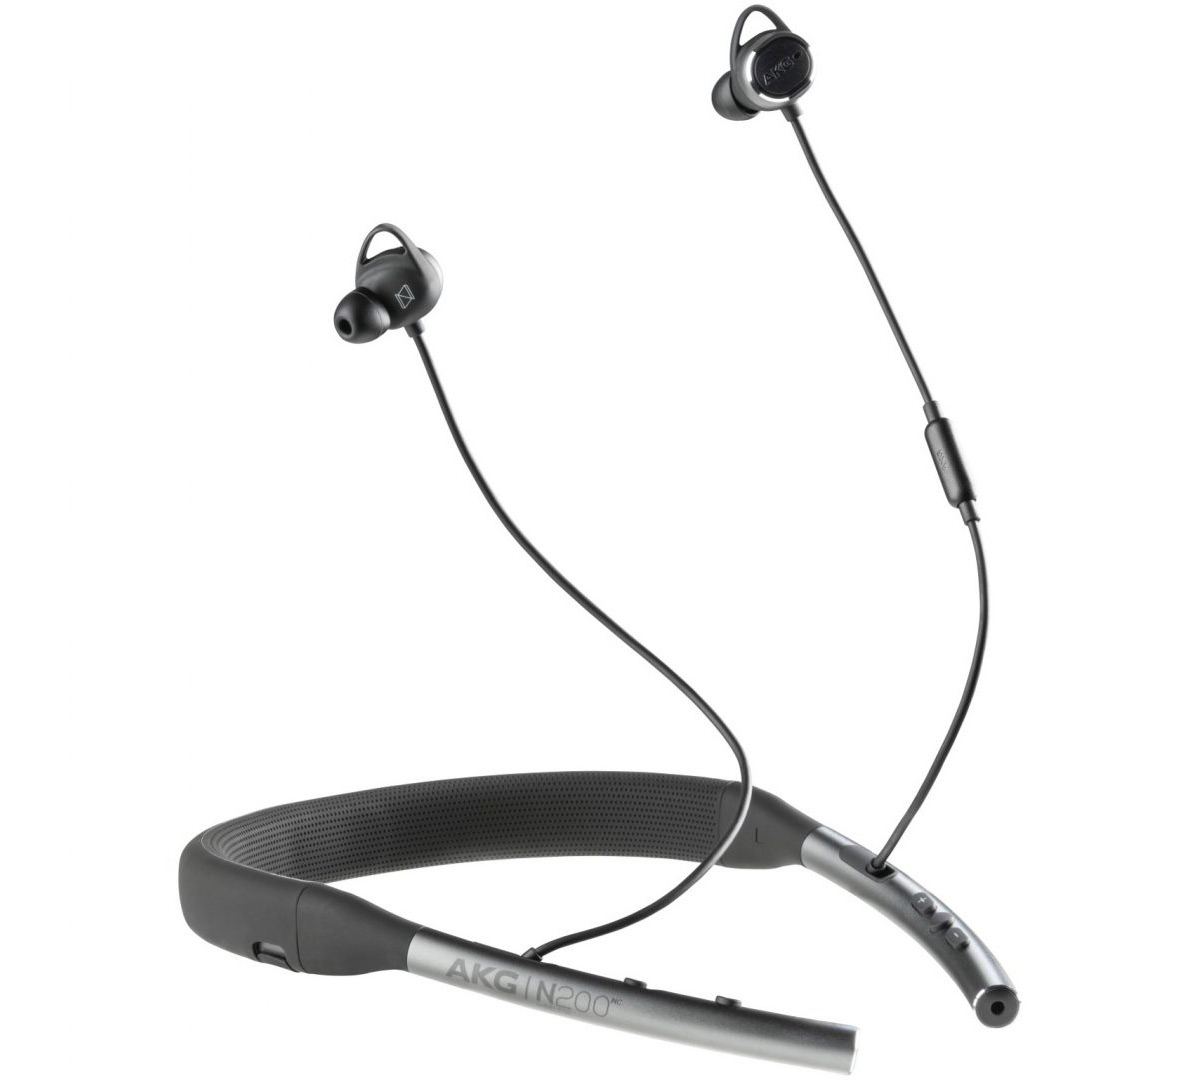 AKG N200nc wireless headphones review